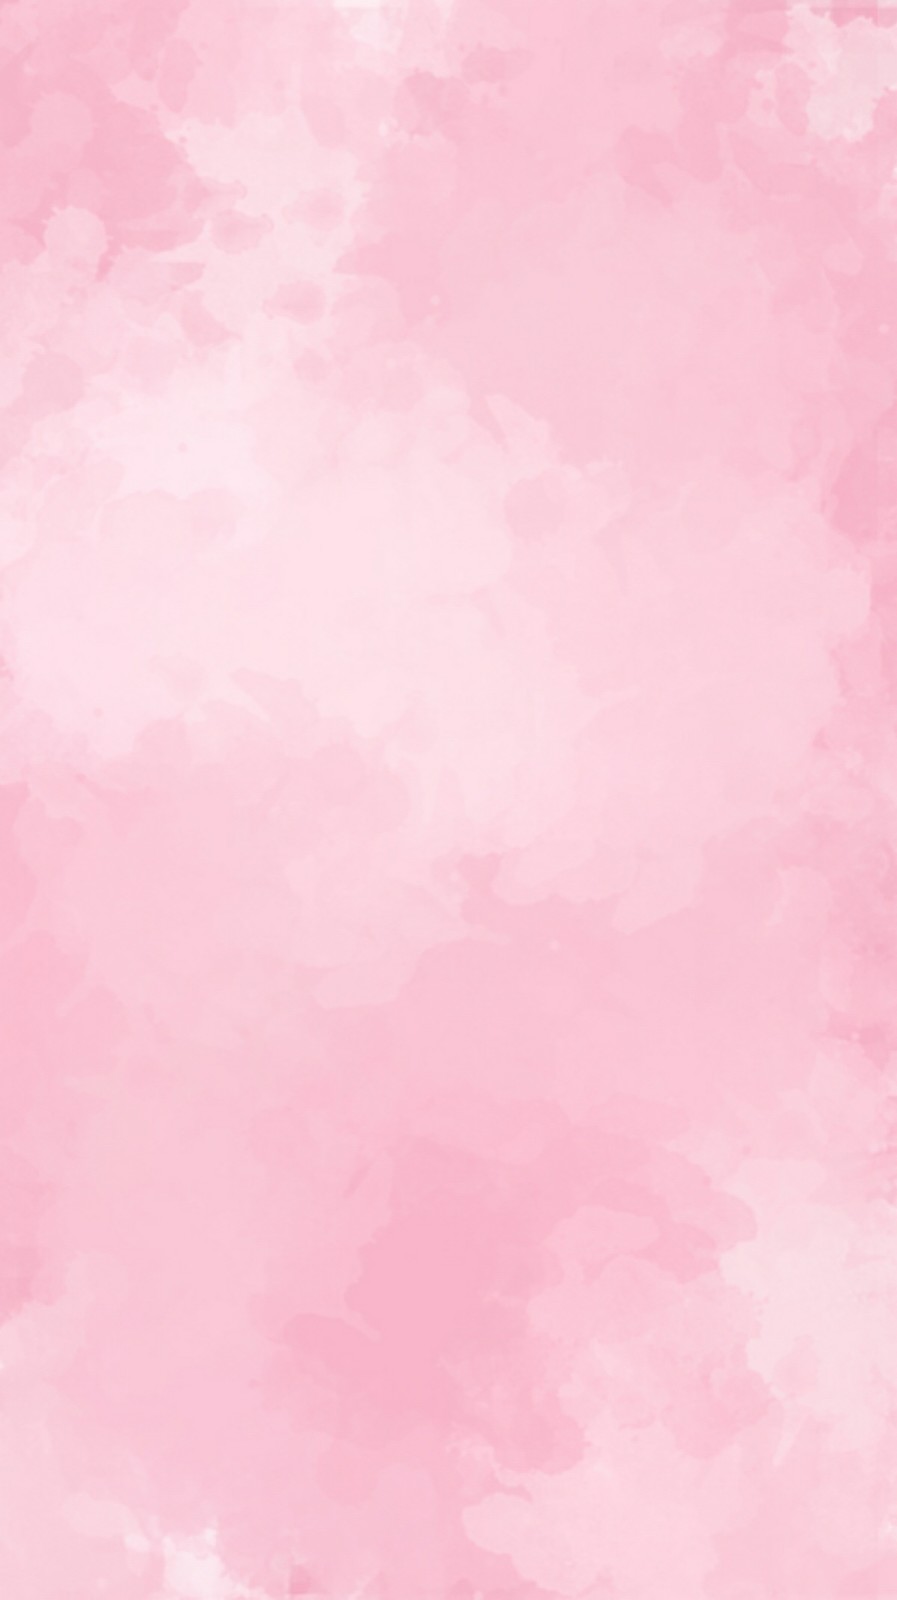 粉红色~美美哒~软妹必备~卡哇伊~壁纸~聊天背景